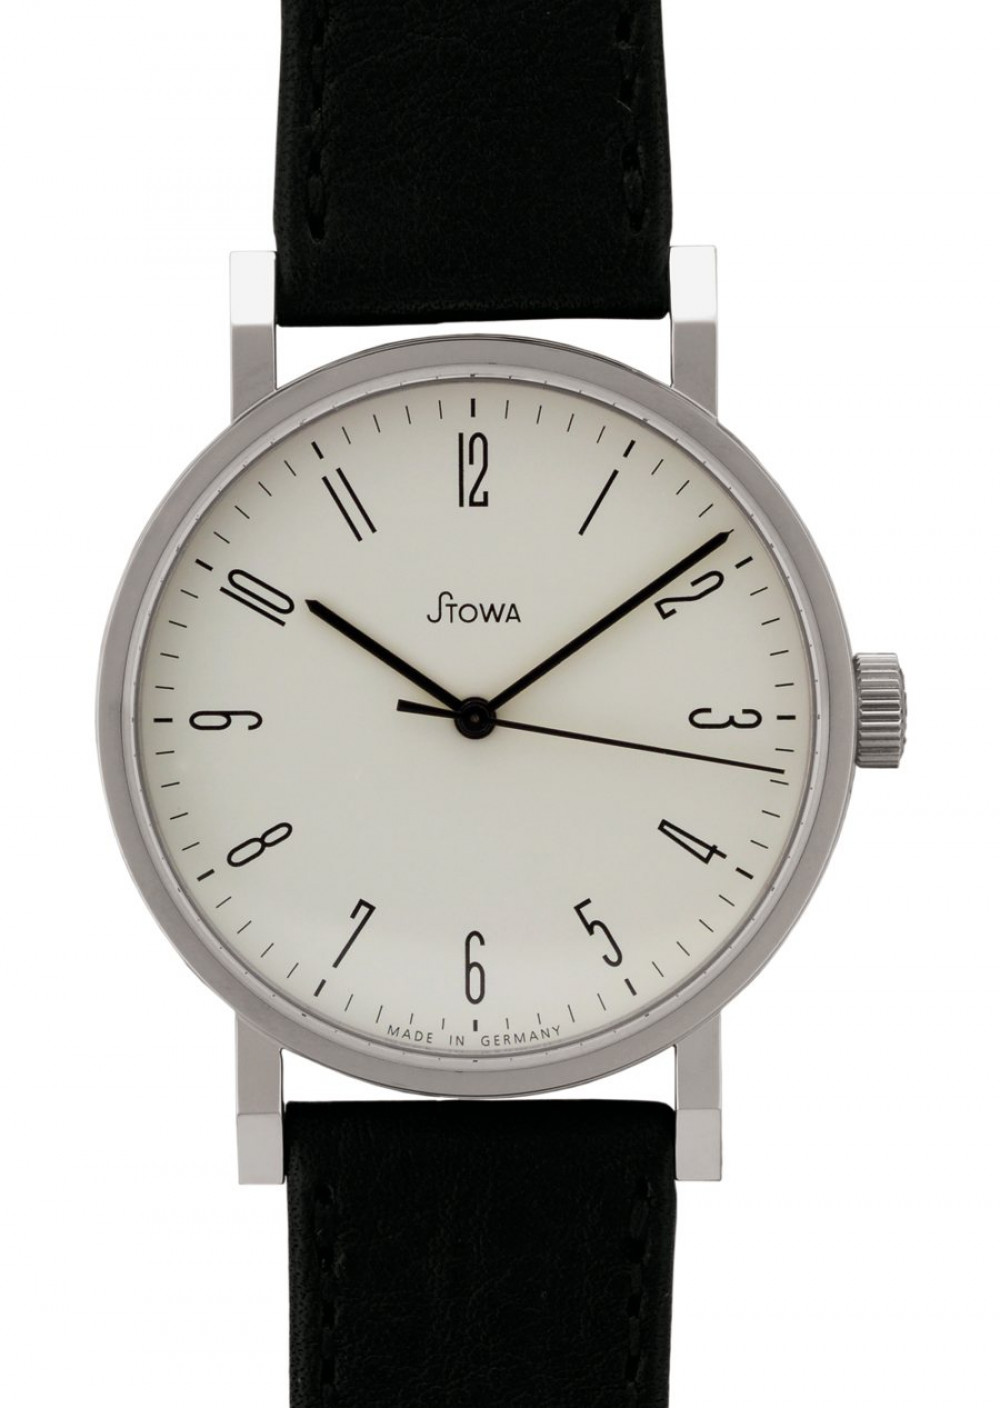 Zegarek firmy Stowa, model Antea